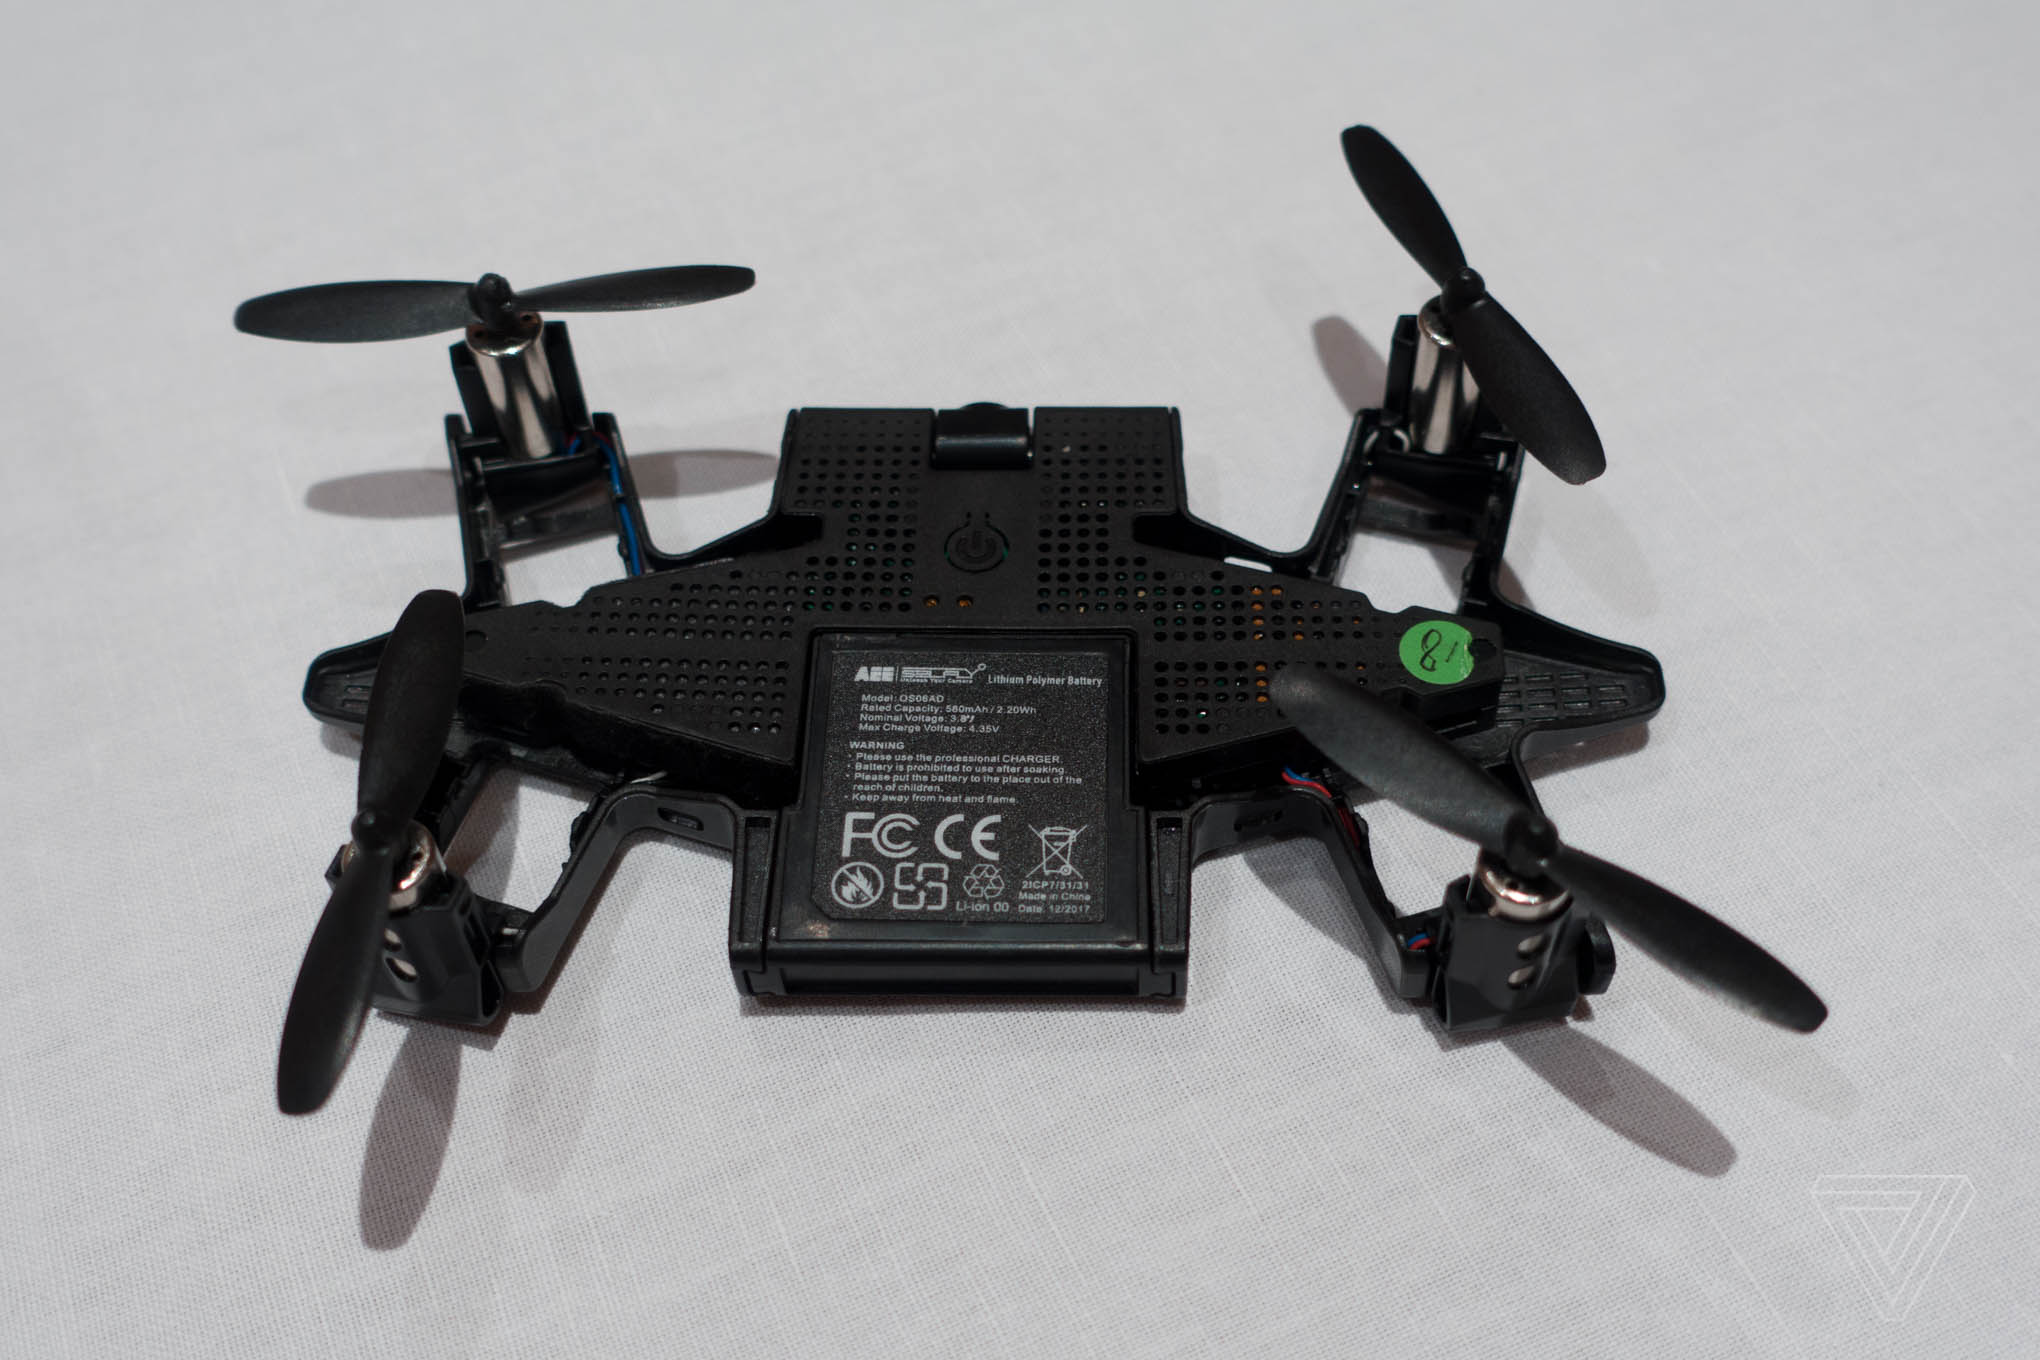 casing smartphone yang bisa berubah menjadi drone